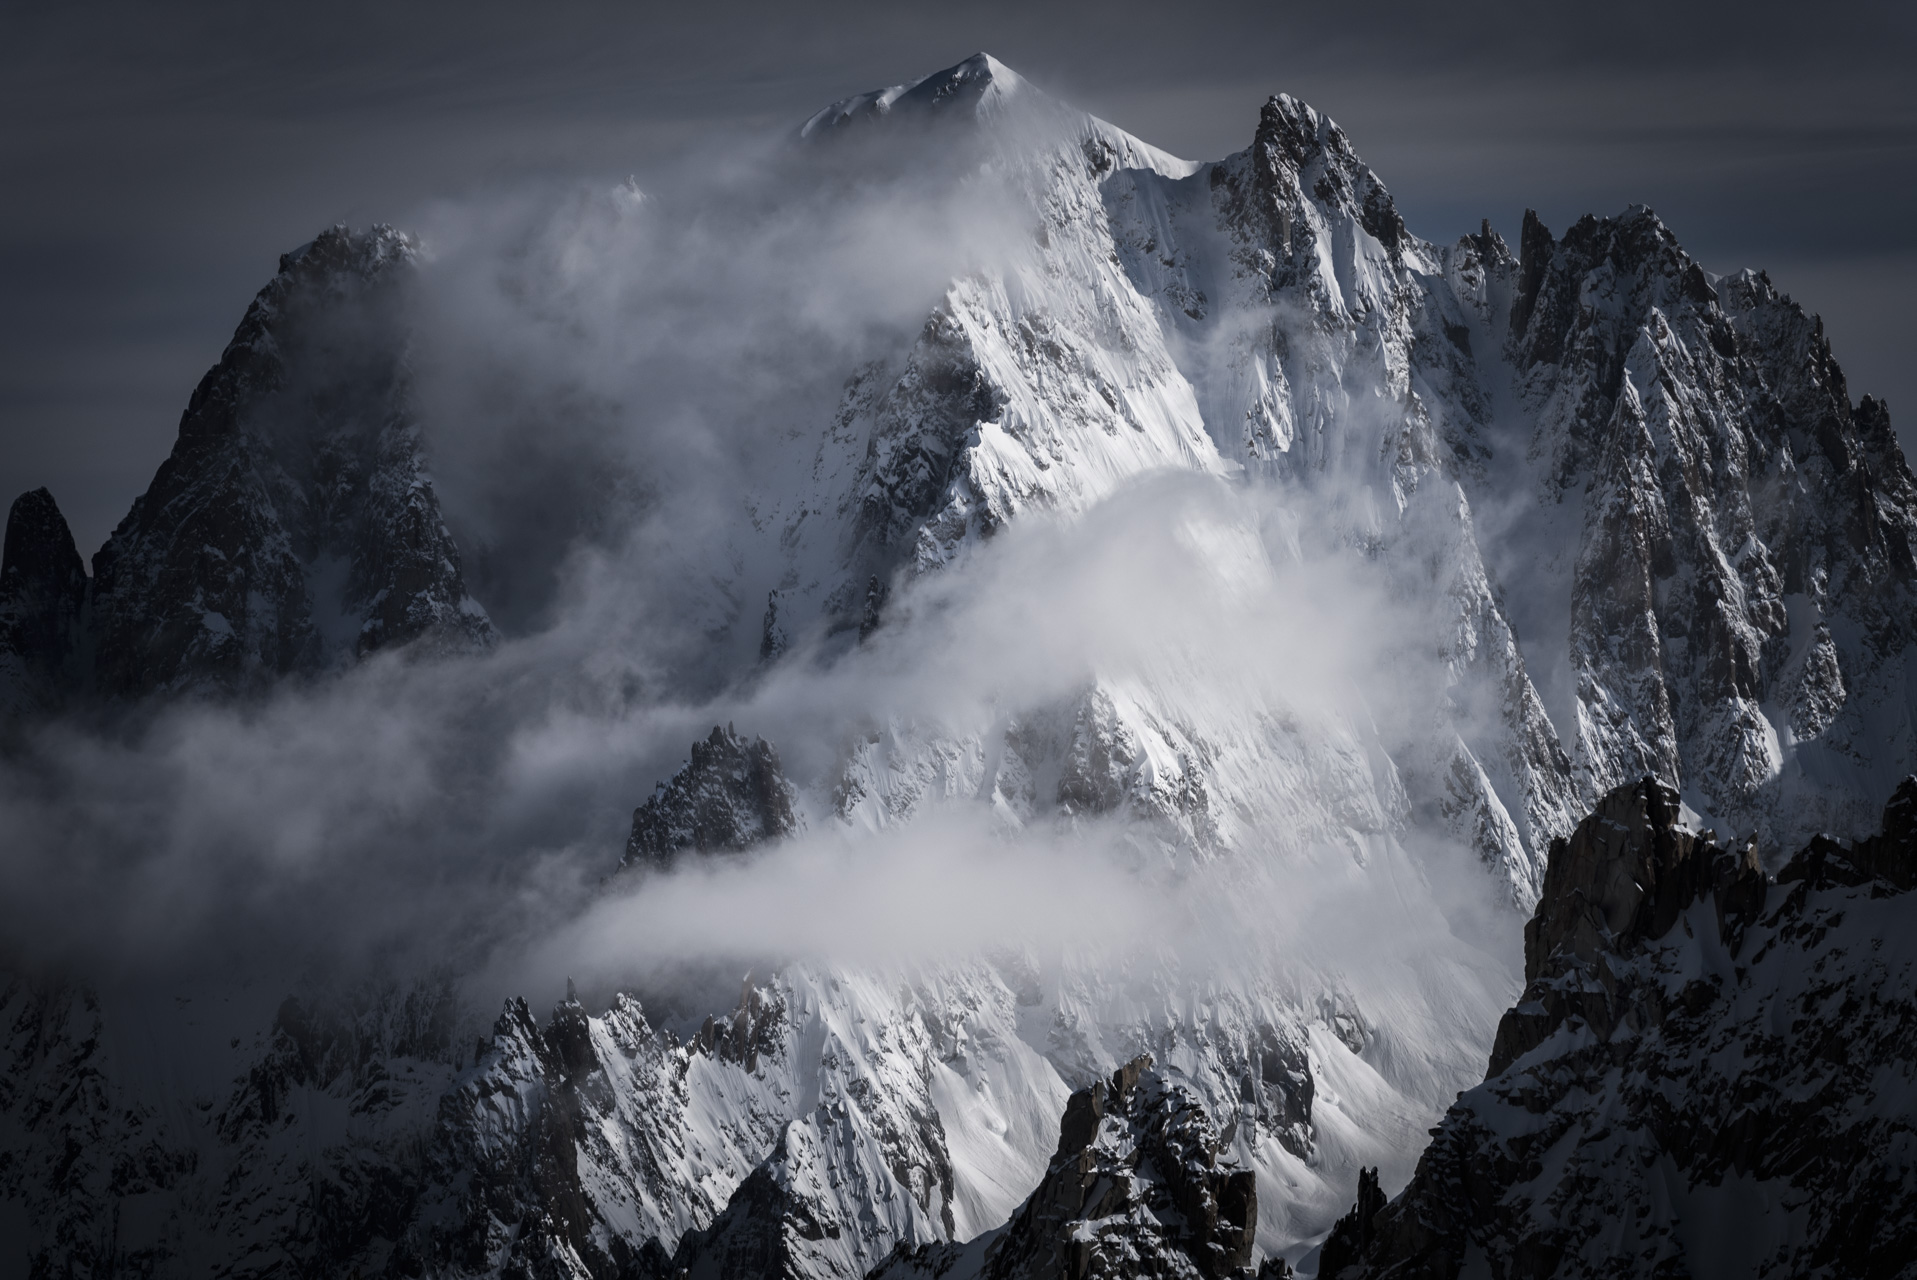 Massifs du mont blanc enneigés - Aiguille Verte